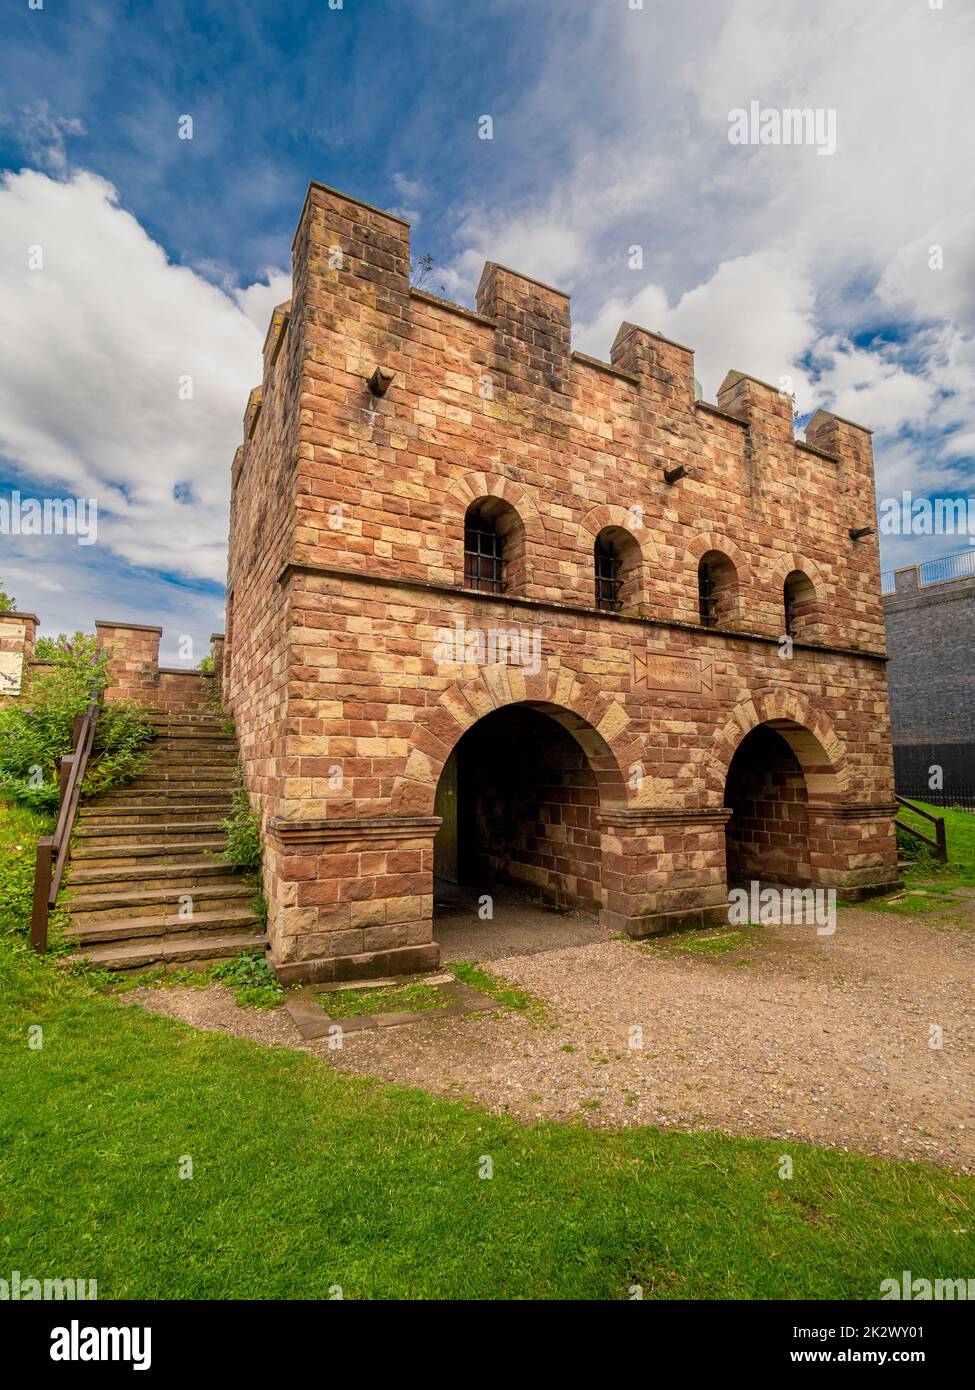 Porte reconstruite vers le fort romain (Mamucium), aujourd'hui parc du patrimoine urbain Castlefield de Manchester. ROYAUME-UNI Banque D'Images